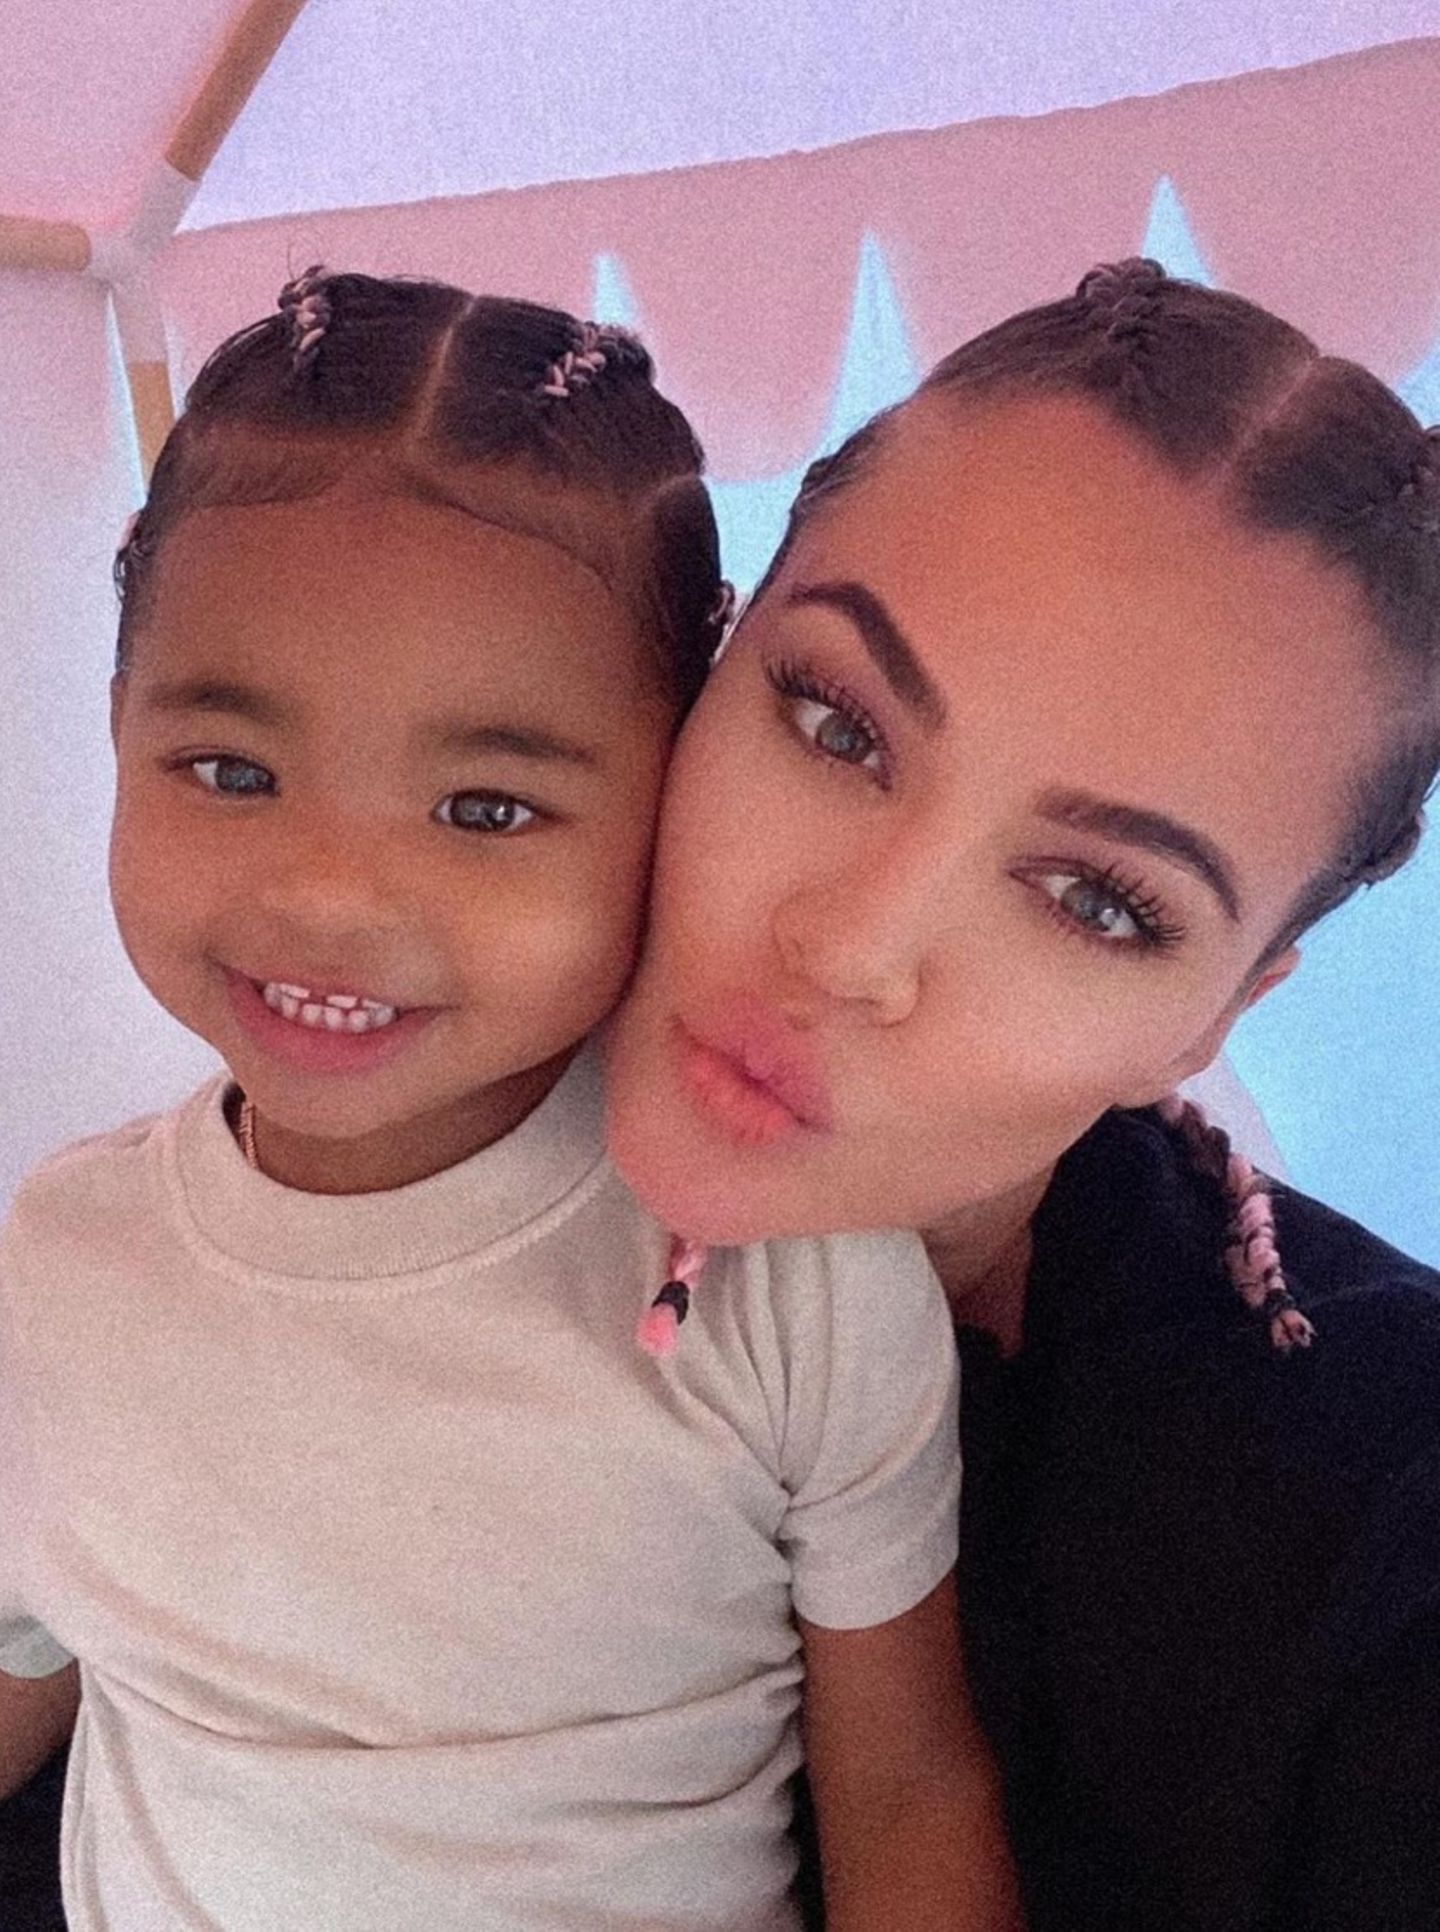 Dieser Mama-Tochter-Schnappschuss von Khloe Kardashian, 36, und der kleinen True, 2, ist einfach zuckersüß. Mit der gleichen Flechtfrisur posieren die beiden für die Kamera. Twinning is winning!